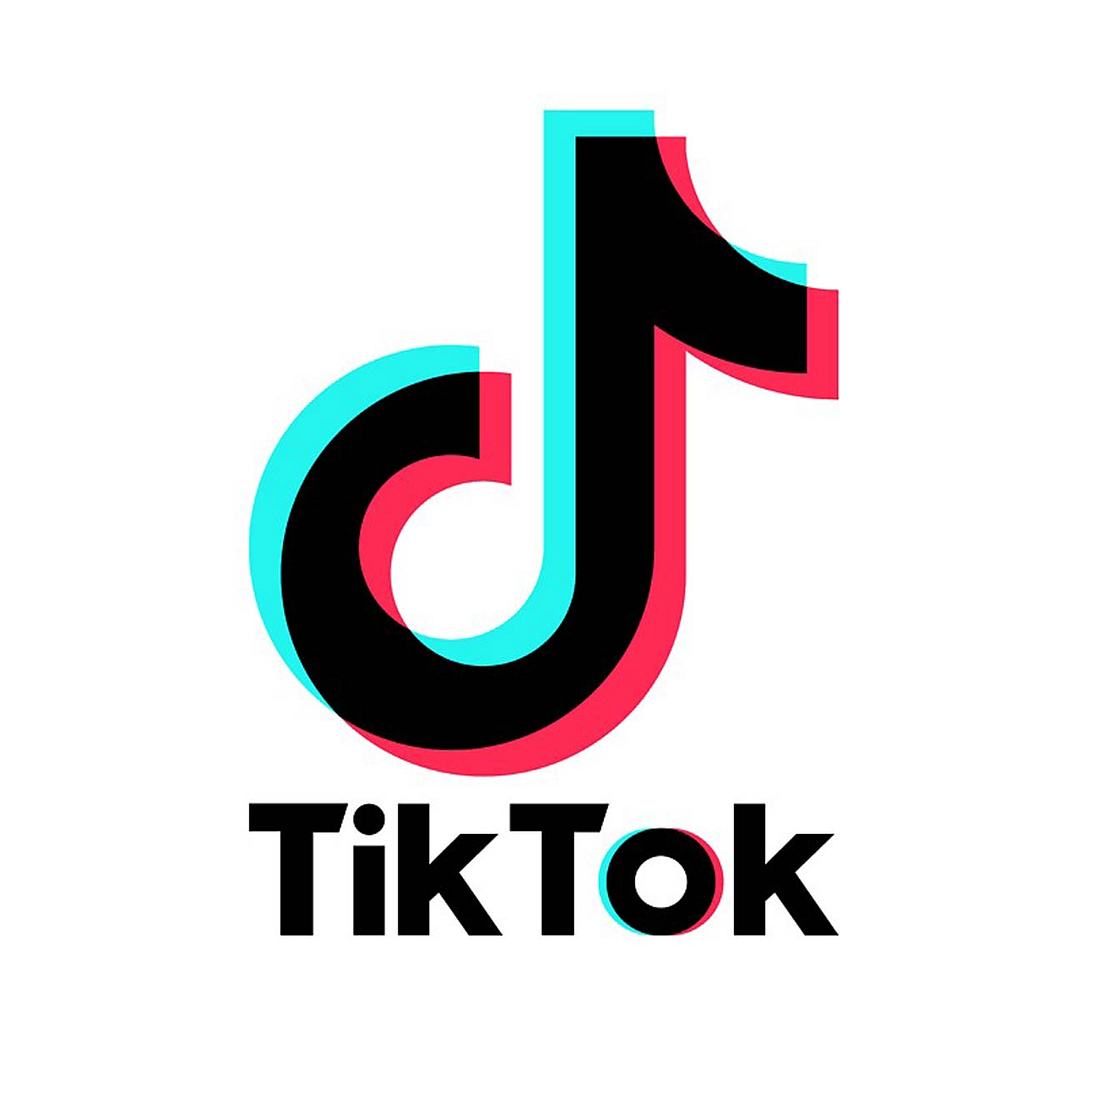 Die beliebte Social Media-App TikTok ist aus unserem Alltag nicht mehr wegzudenken! Besonders für viele TikTok-Stars hätte das Verbot fatale Folgen.